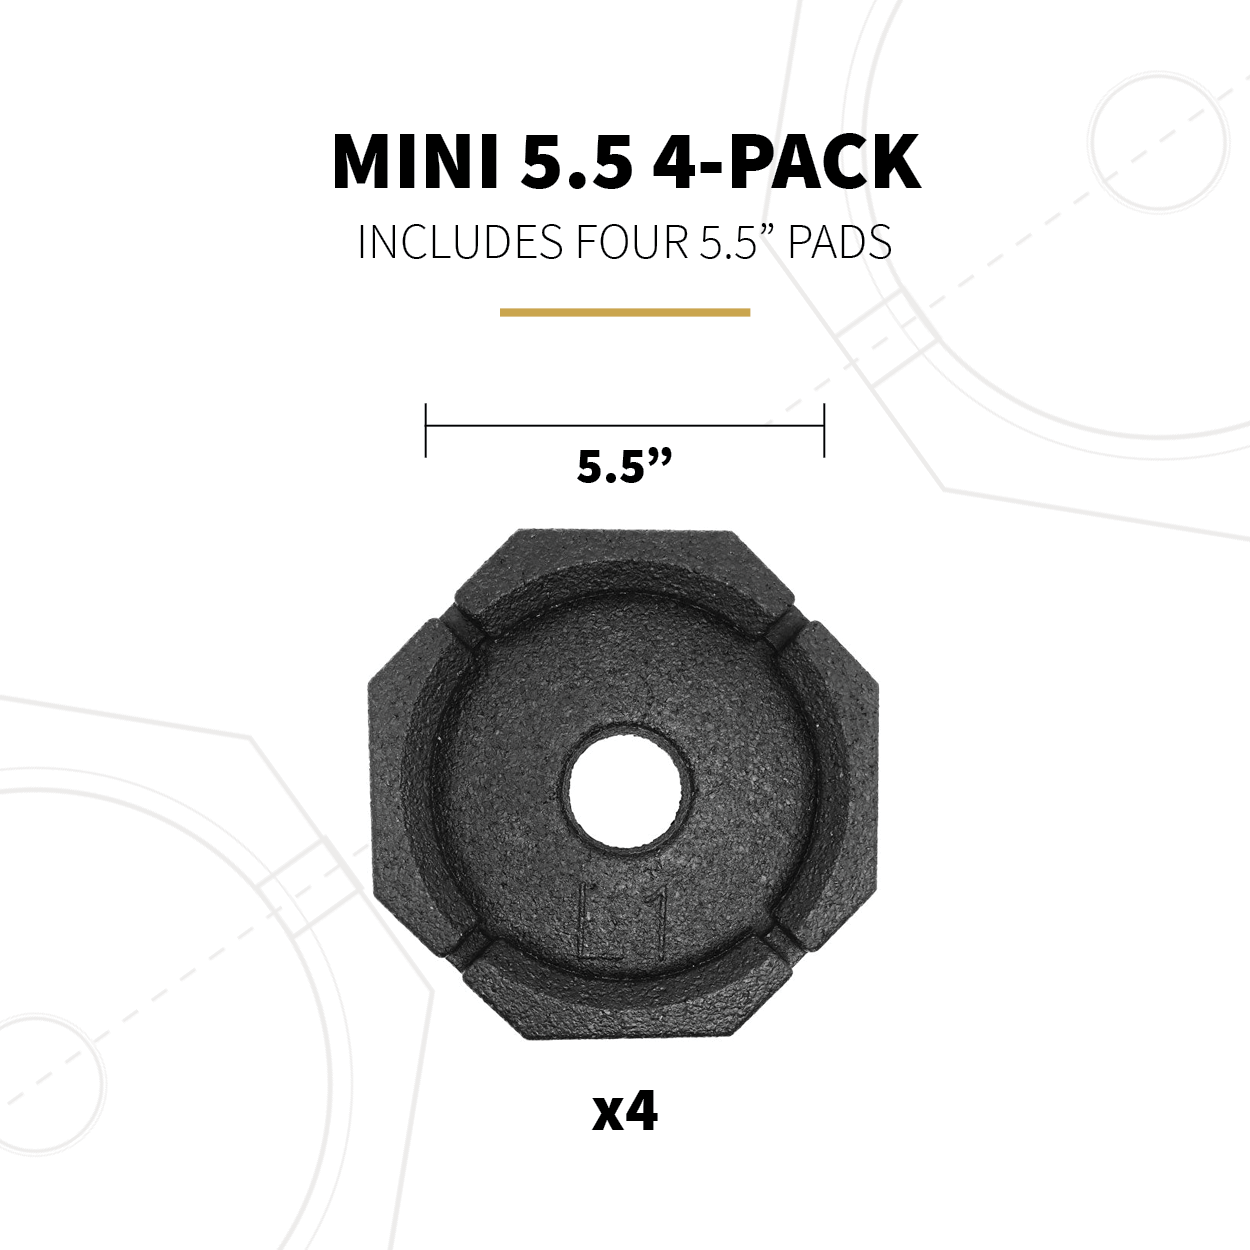 Mini 5.5 4-Pack Specs